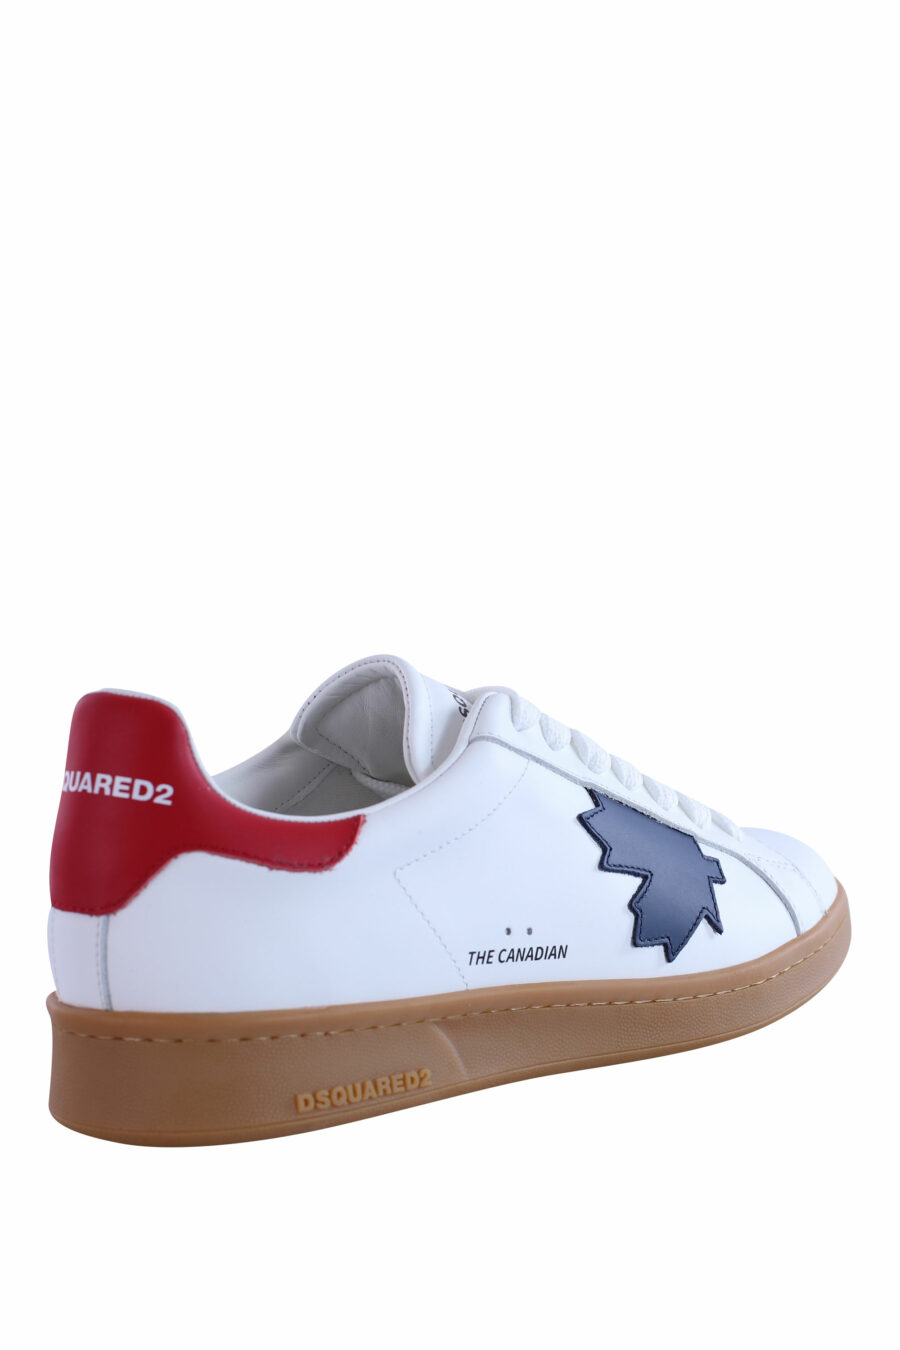 Zapatillas blancas con hoja azul y suela marrón - IMG 2966